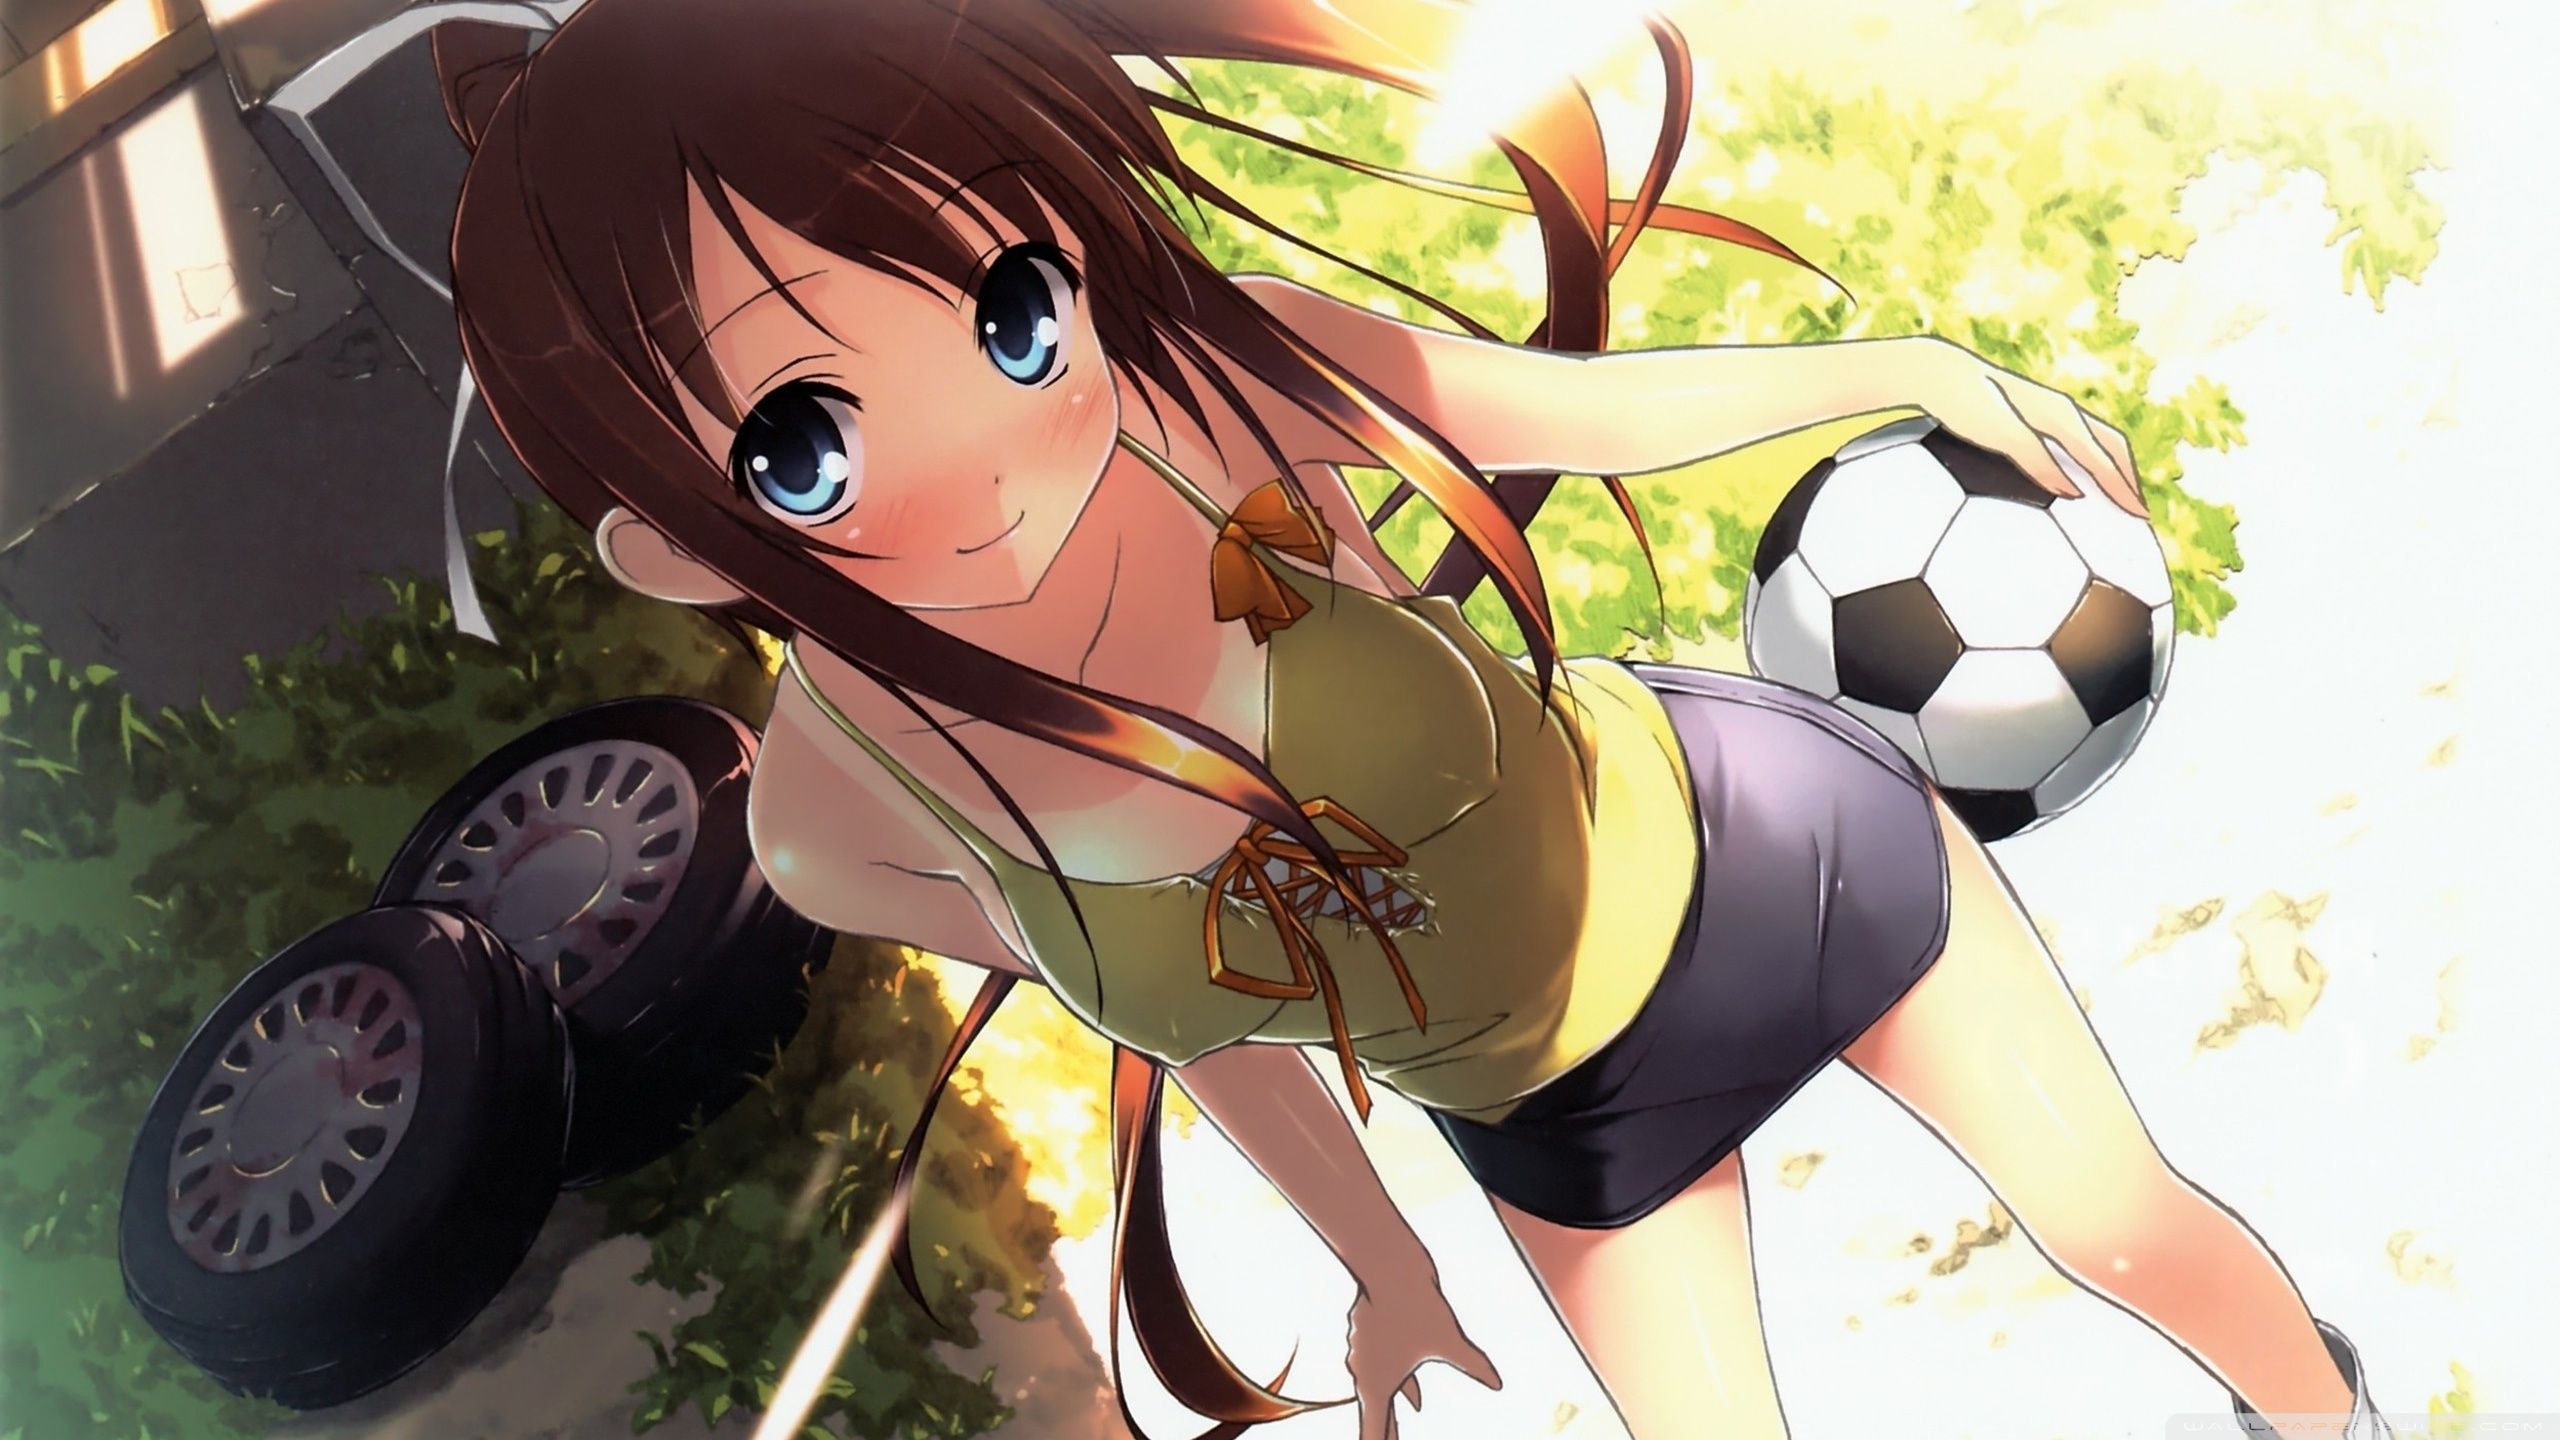 Anime Football Girl Ultra HD Desktop Background Wallpaper for 4K UHD TV, Tablet